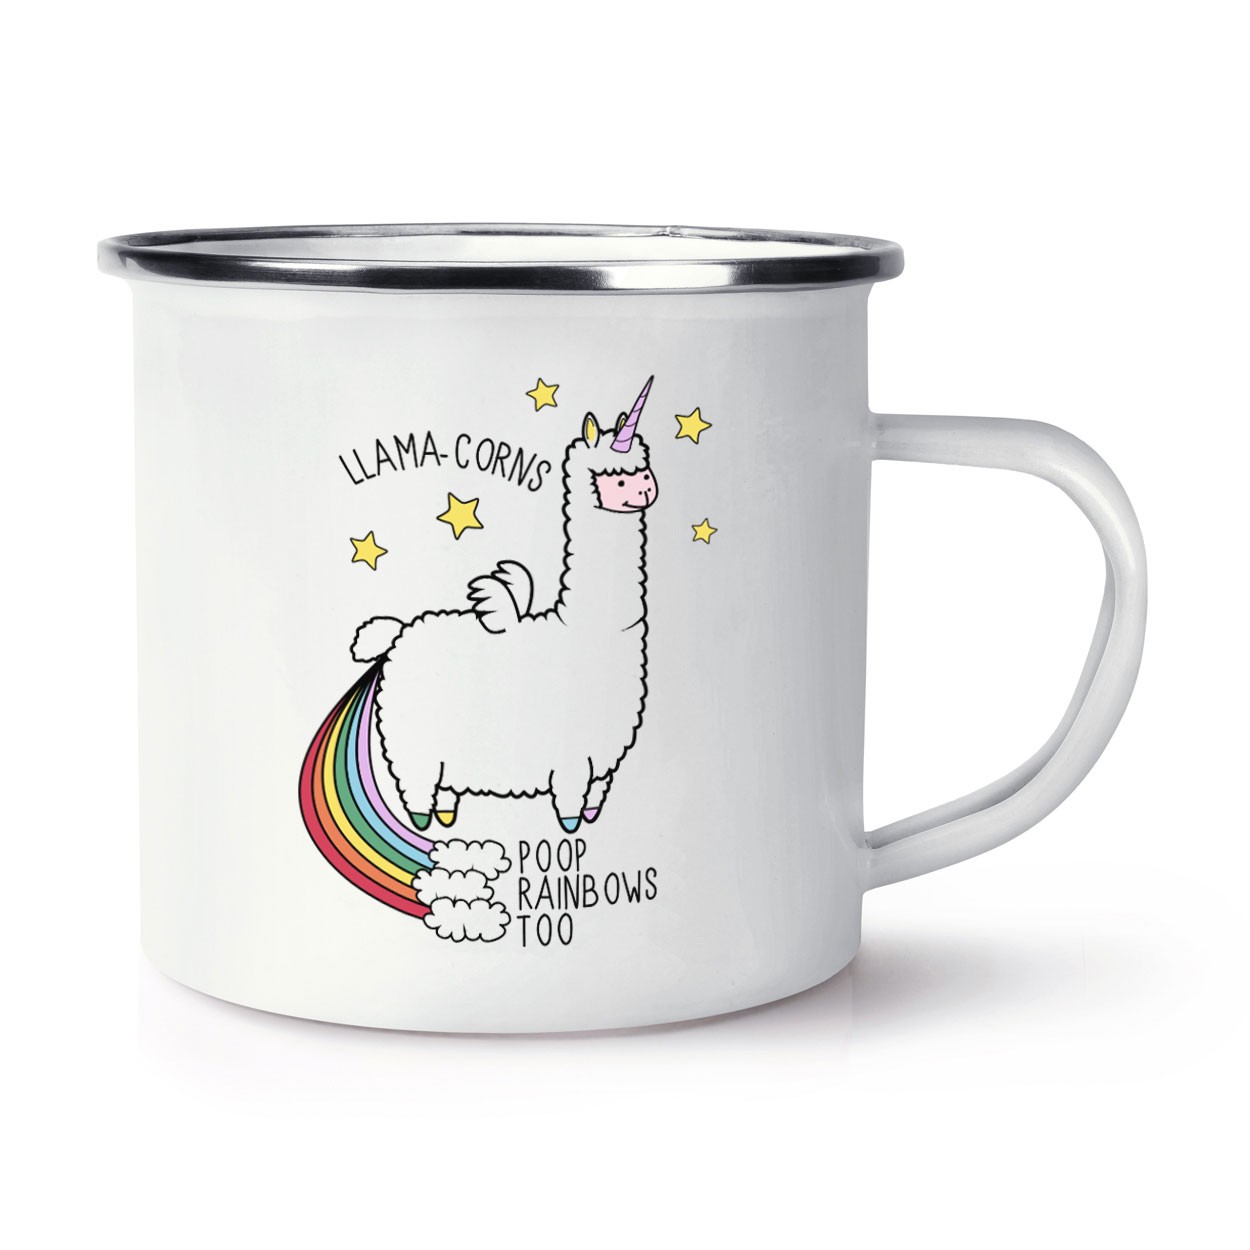 Llama-corns Poop Rainbows Too Retro Enamel Mug Cup